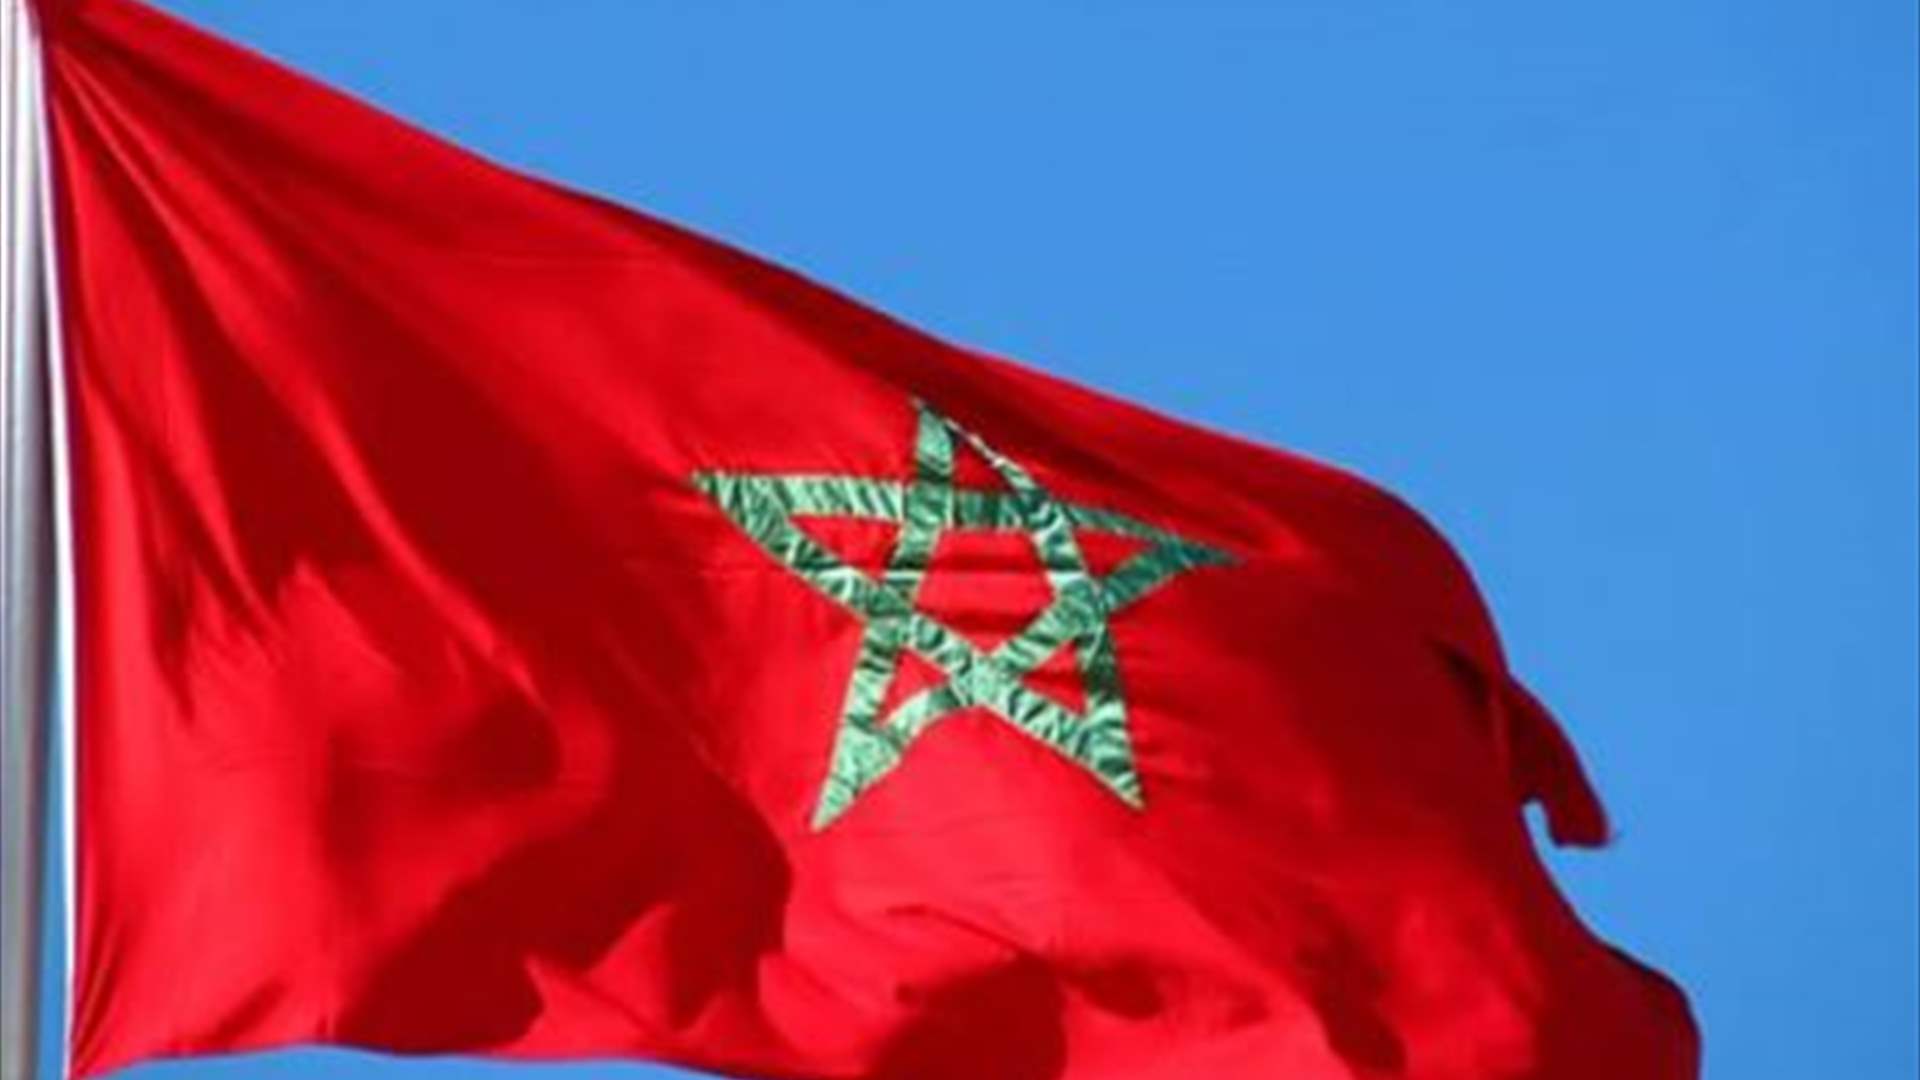 المغرب يفرض رسوم مكافحة إغراق على الأفران الكهربائية التركية